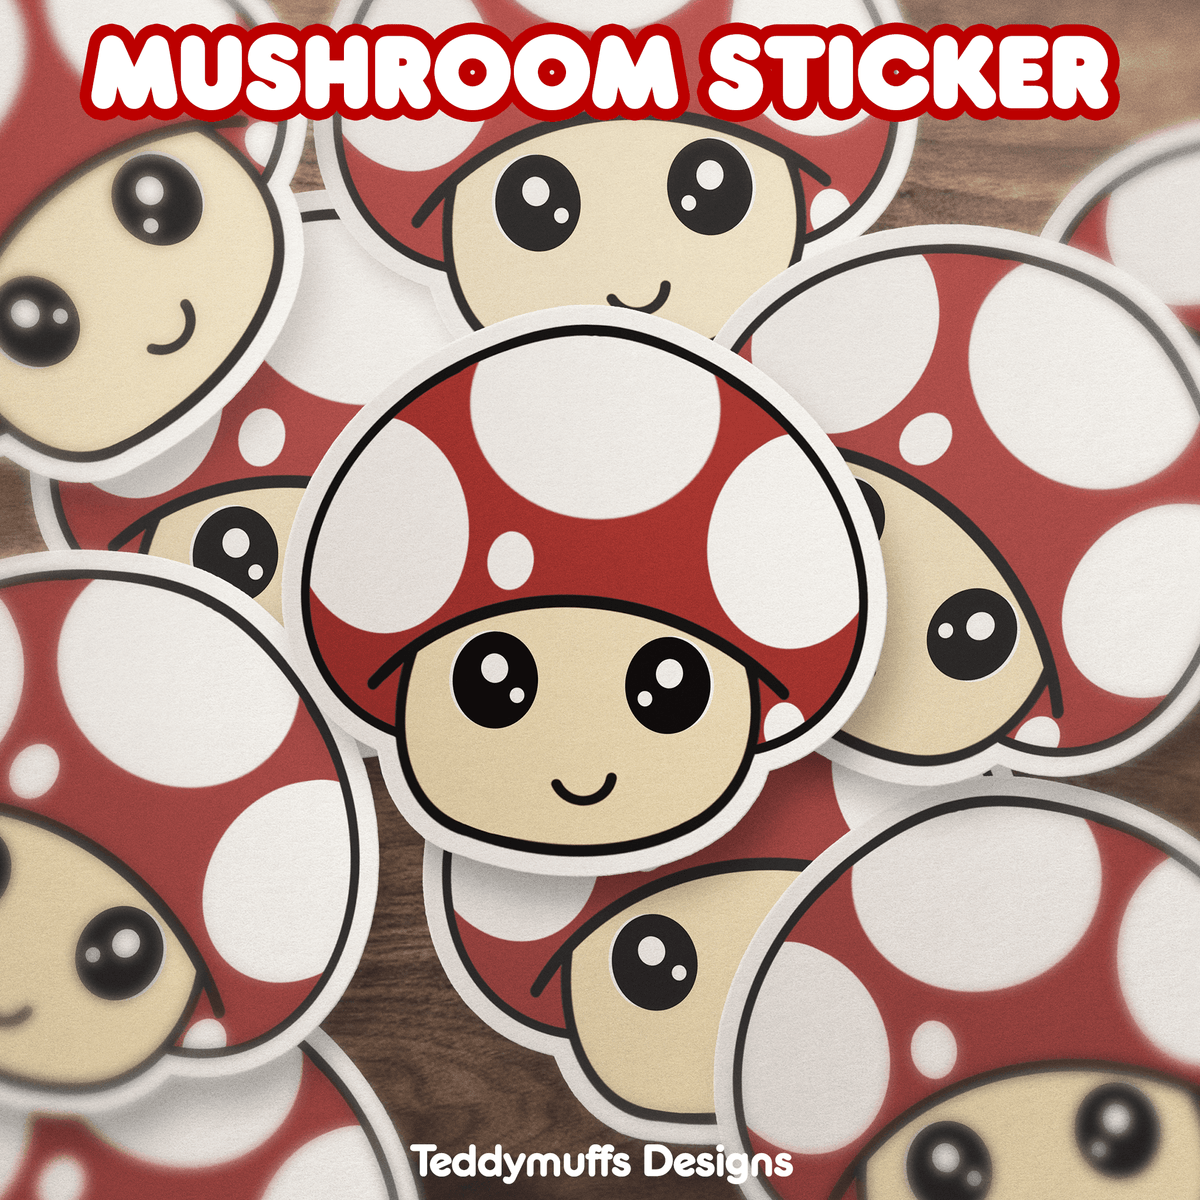 Mushroom Sticker - Teddymuffs Designs